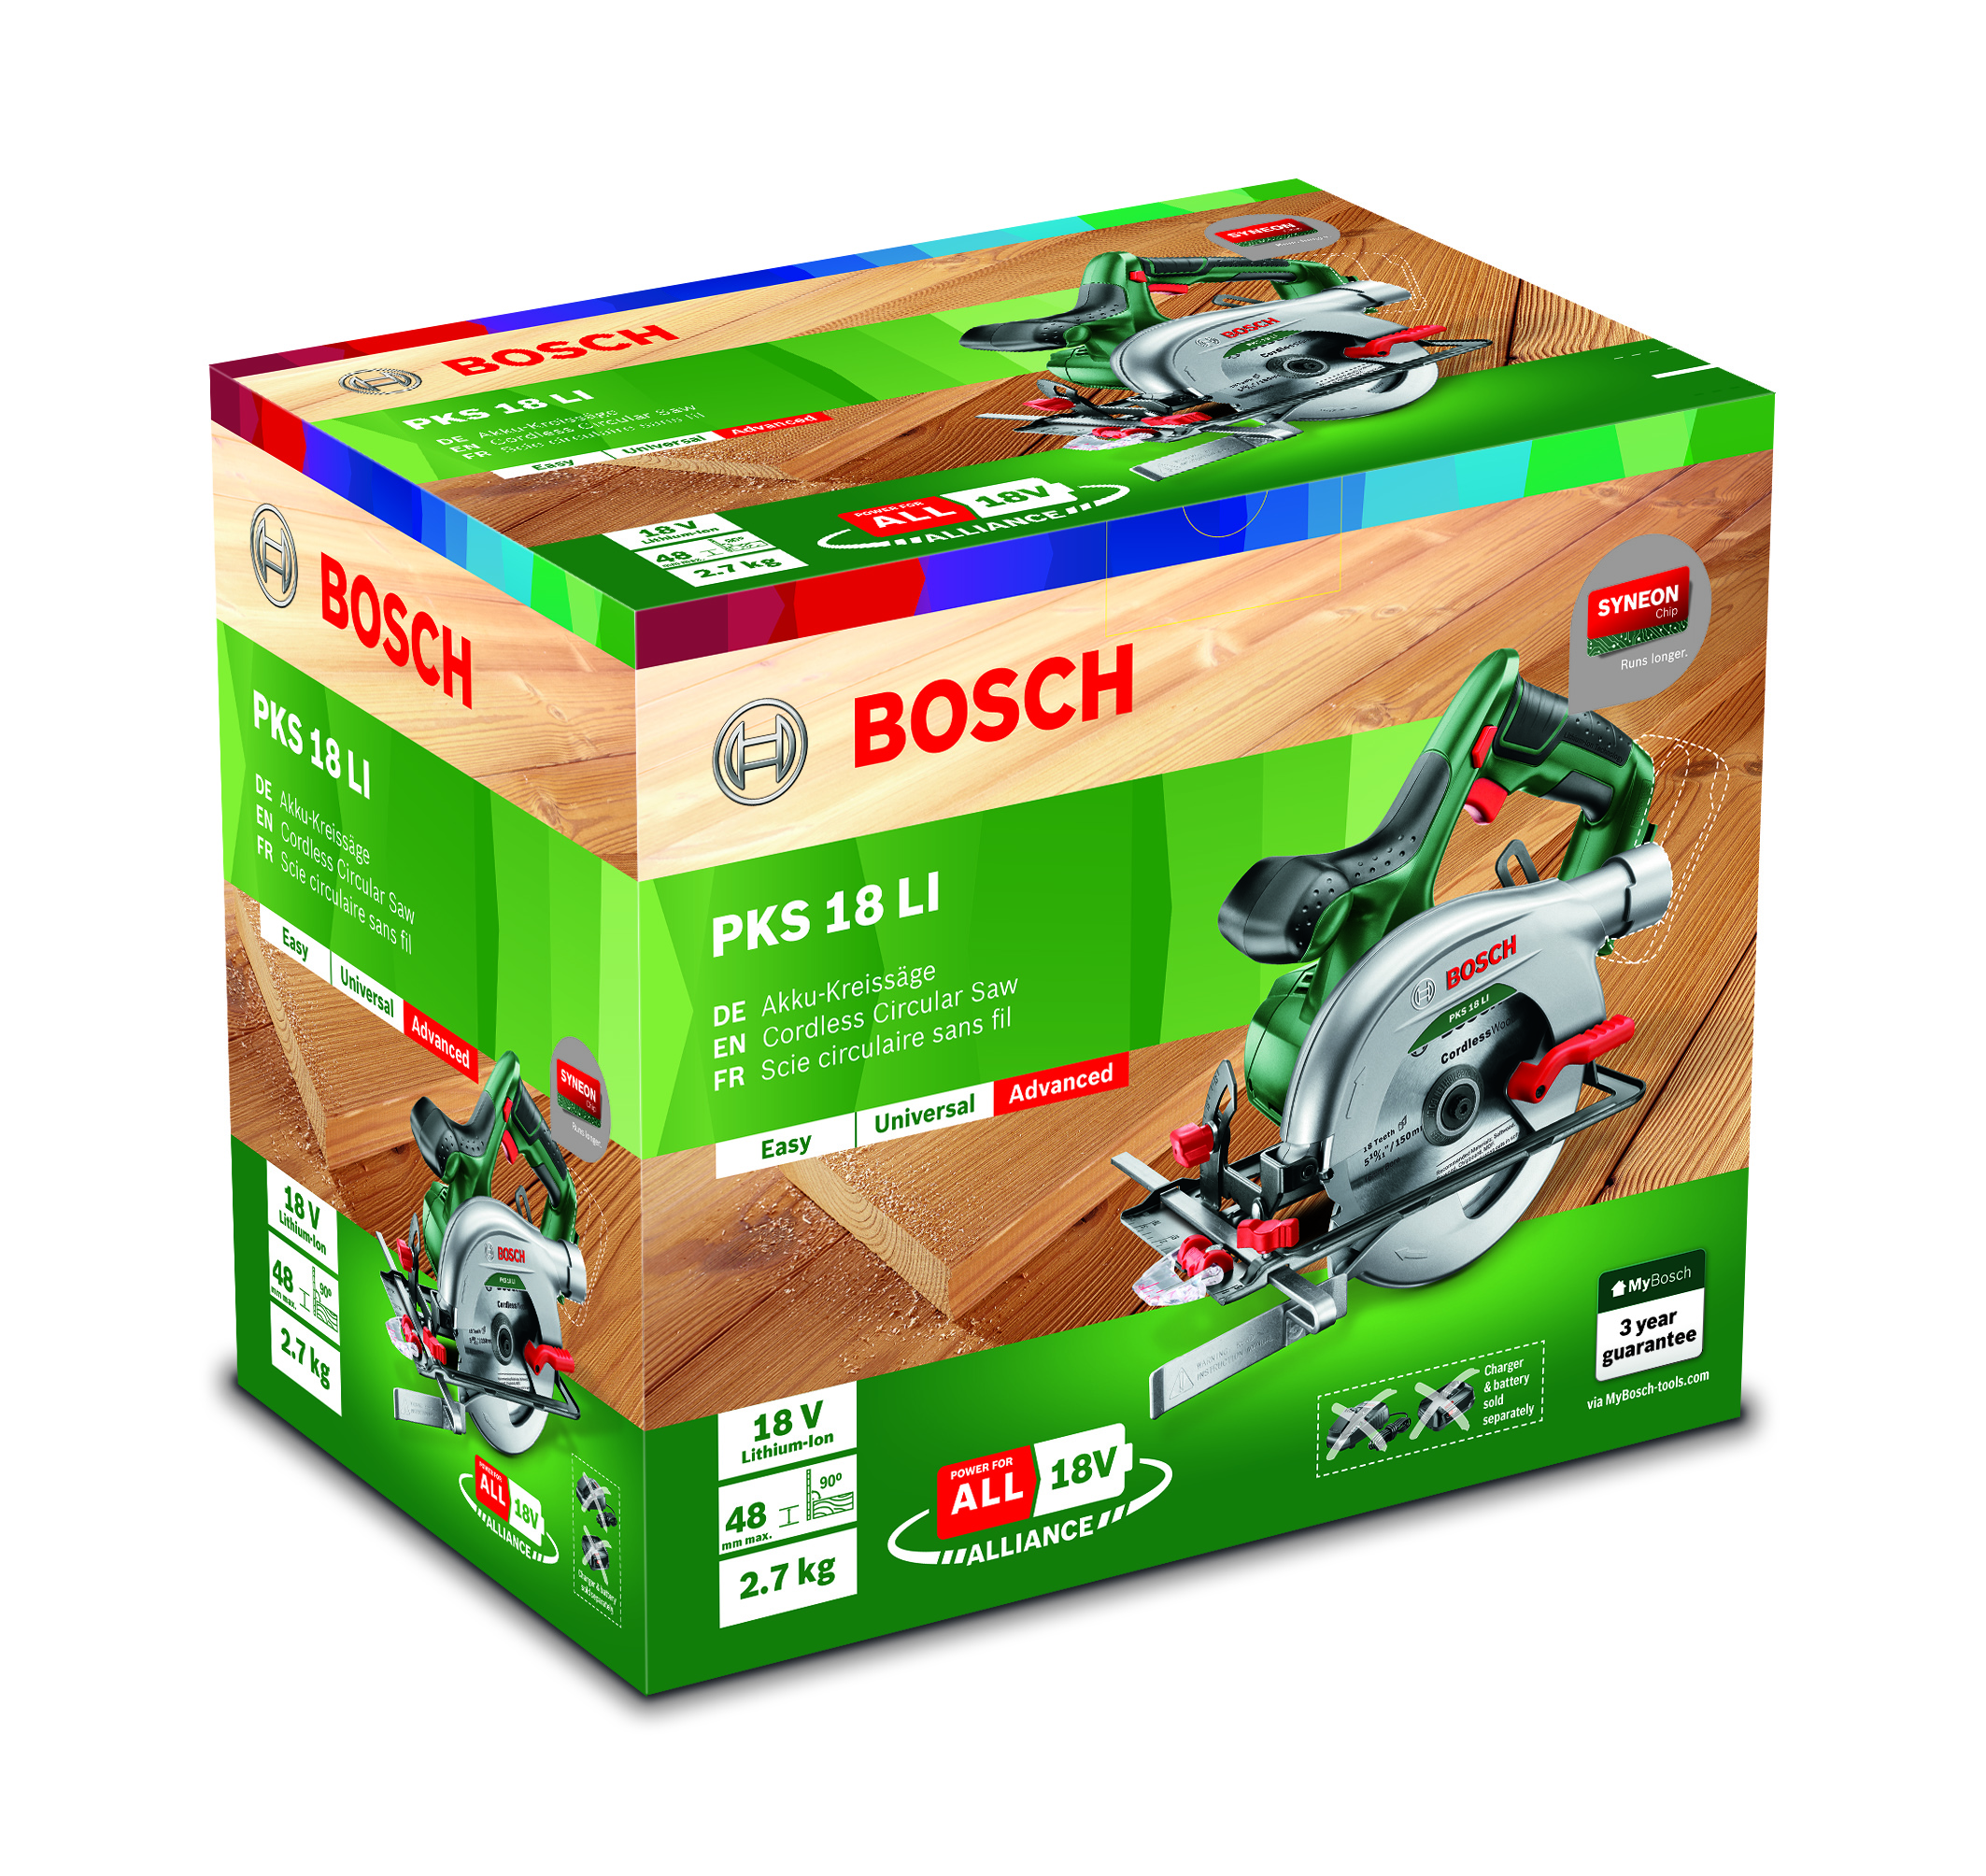 Bosch Akku-Handkreissäge PKS 18 LI Verpackung